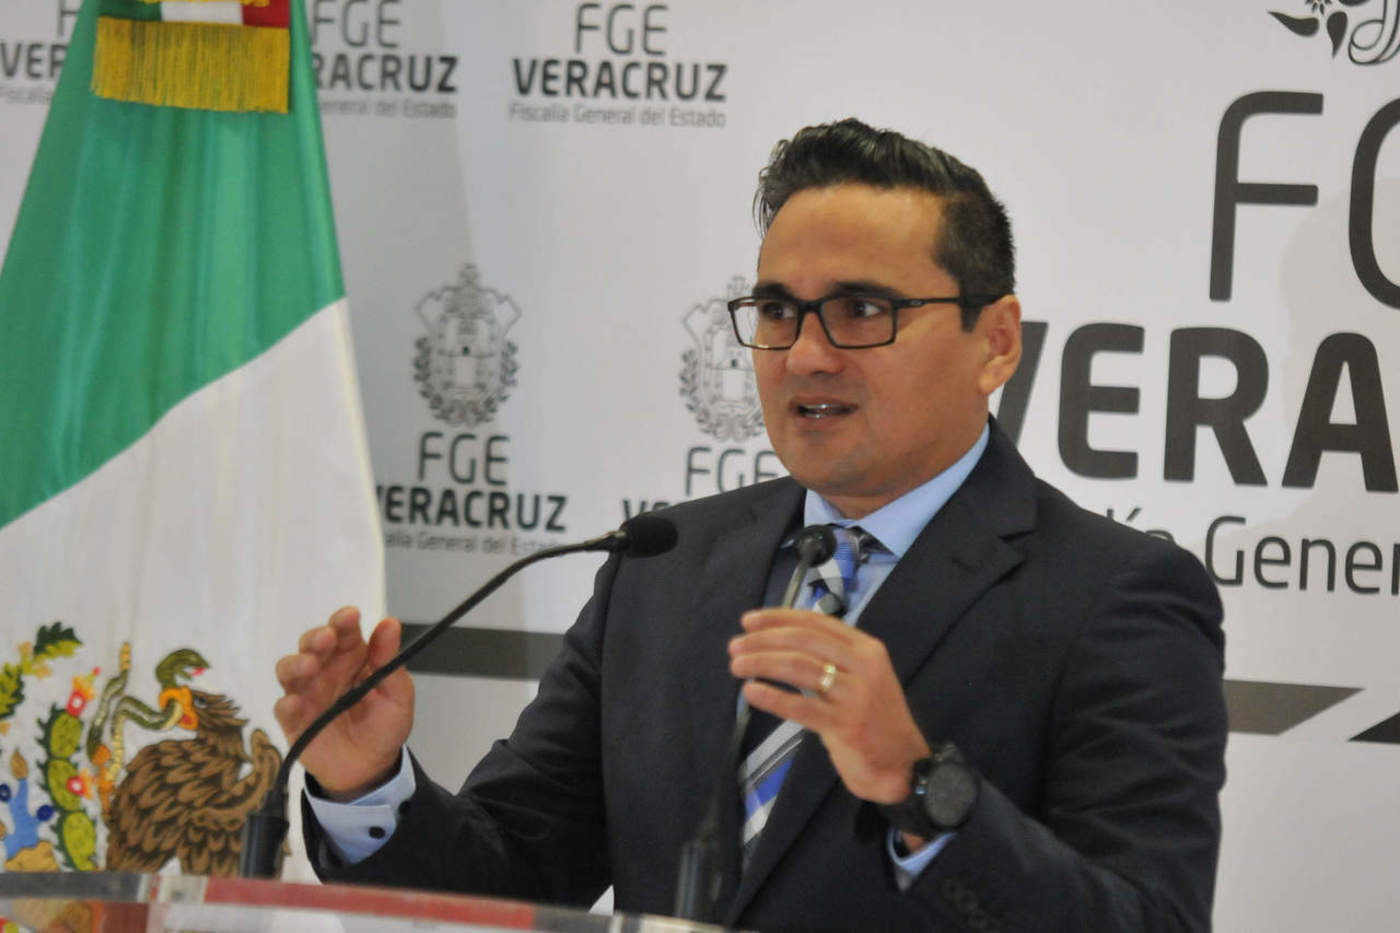 Fotógrafo secuestrado acusa al fiscal de Veracruz. Noticias en tiempo real